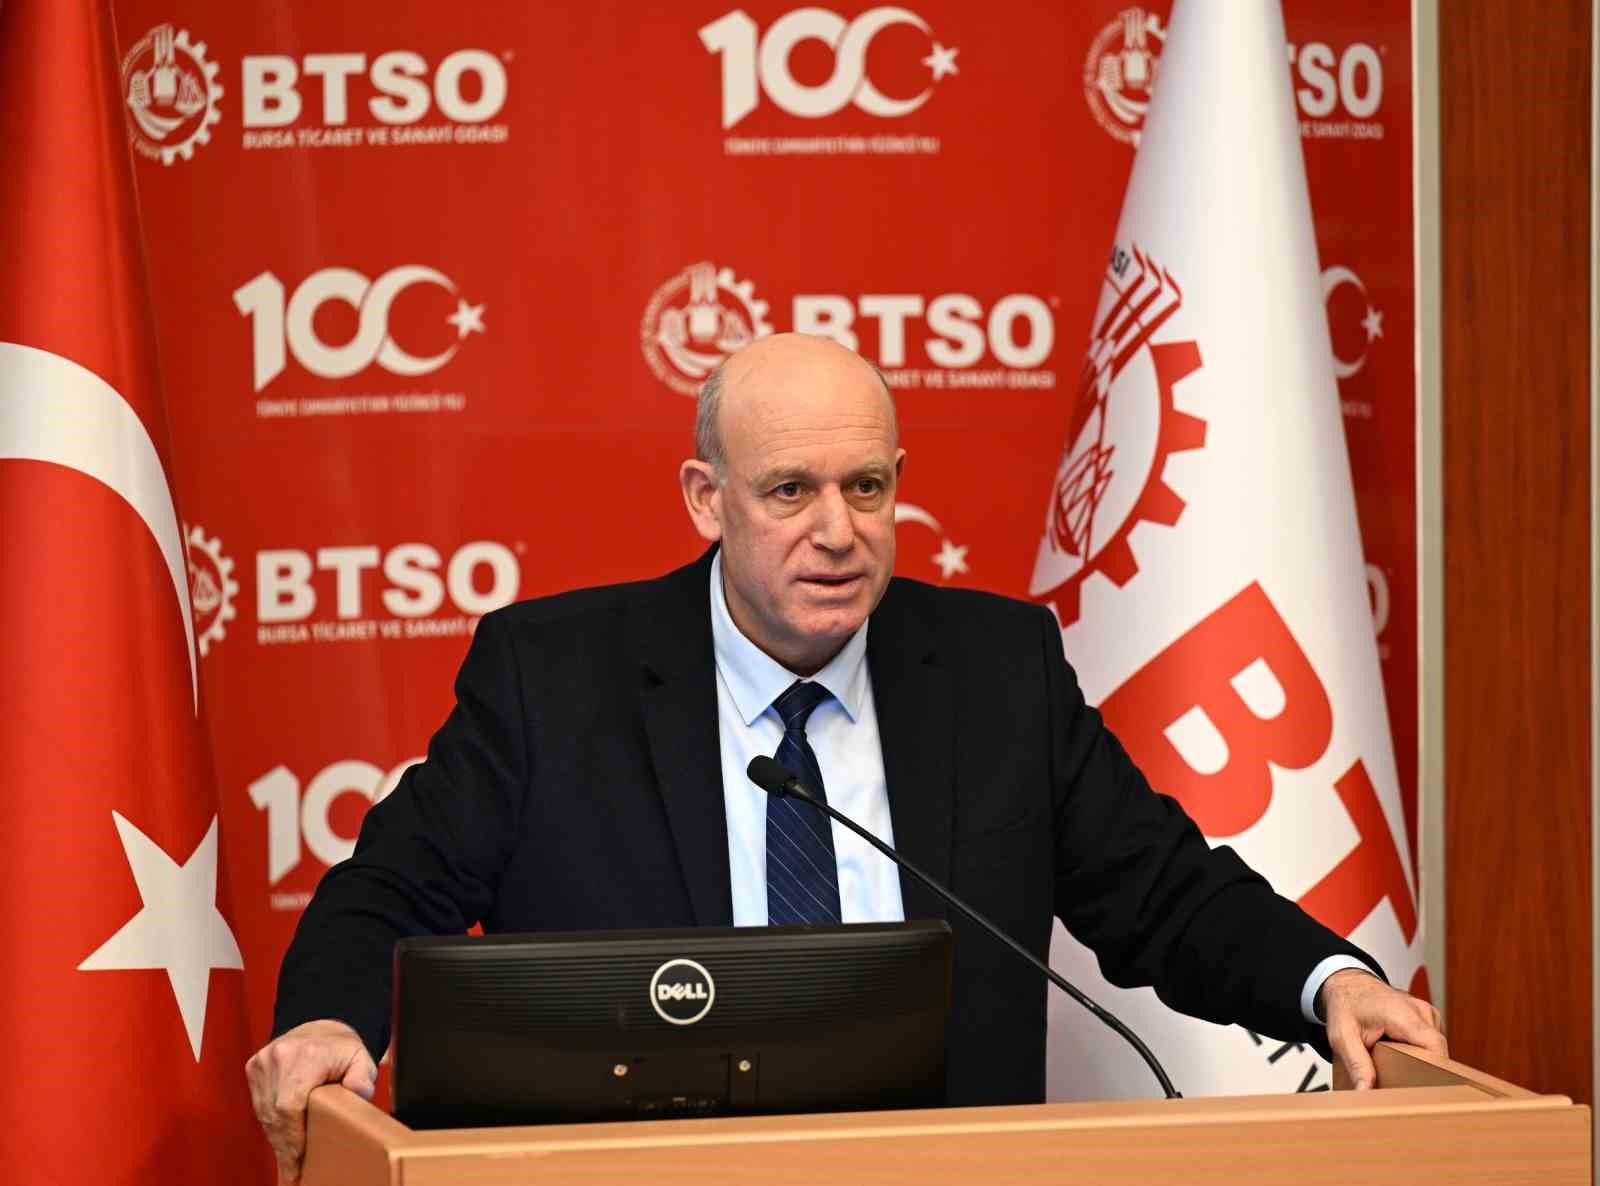 İsmail Kuş: “KOBİ OSB’ler Bursa’yı çok daha rekabetçi bir yapıya kavuşturacak”